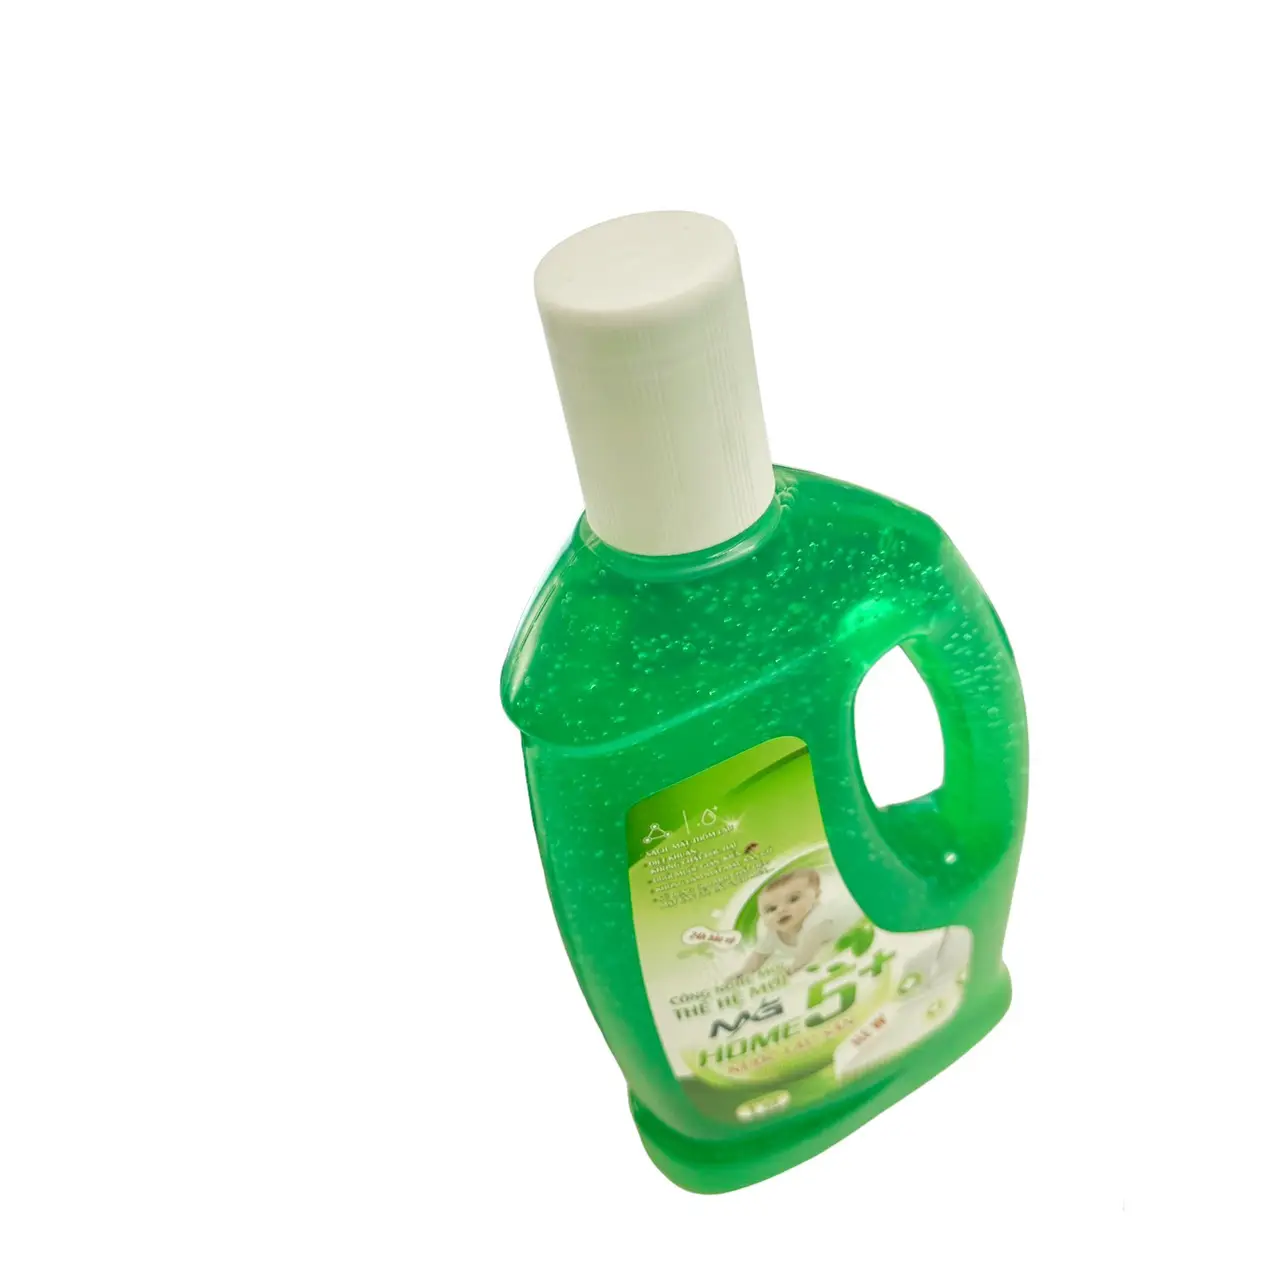 Zemin temizleyici kullanıcılar için güvenli olması için sertifikalı toptan deterjan özel sıvı kimyasalları